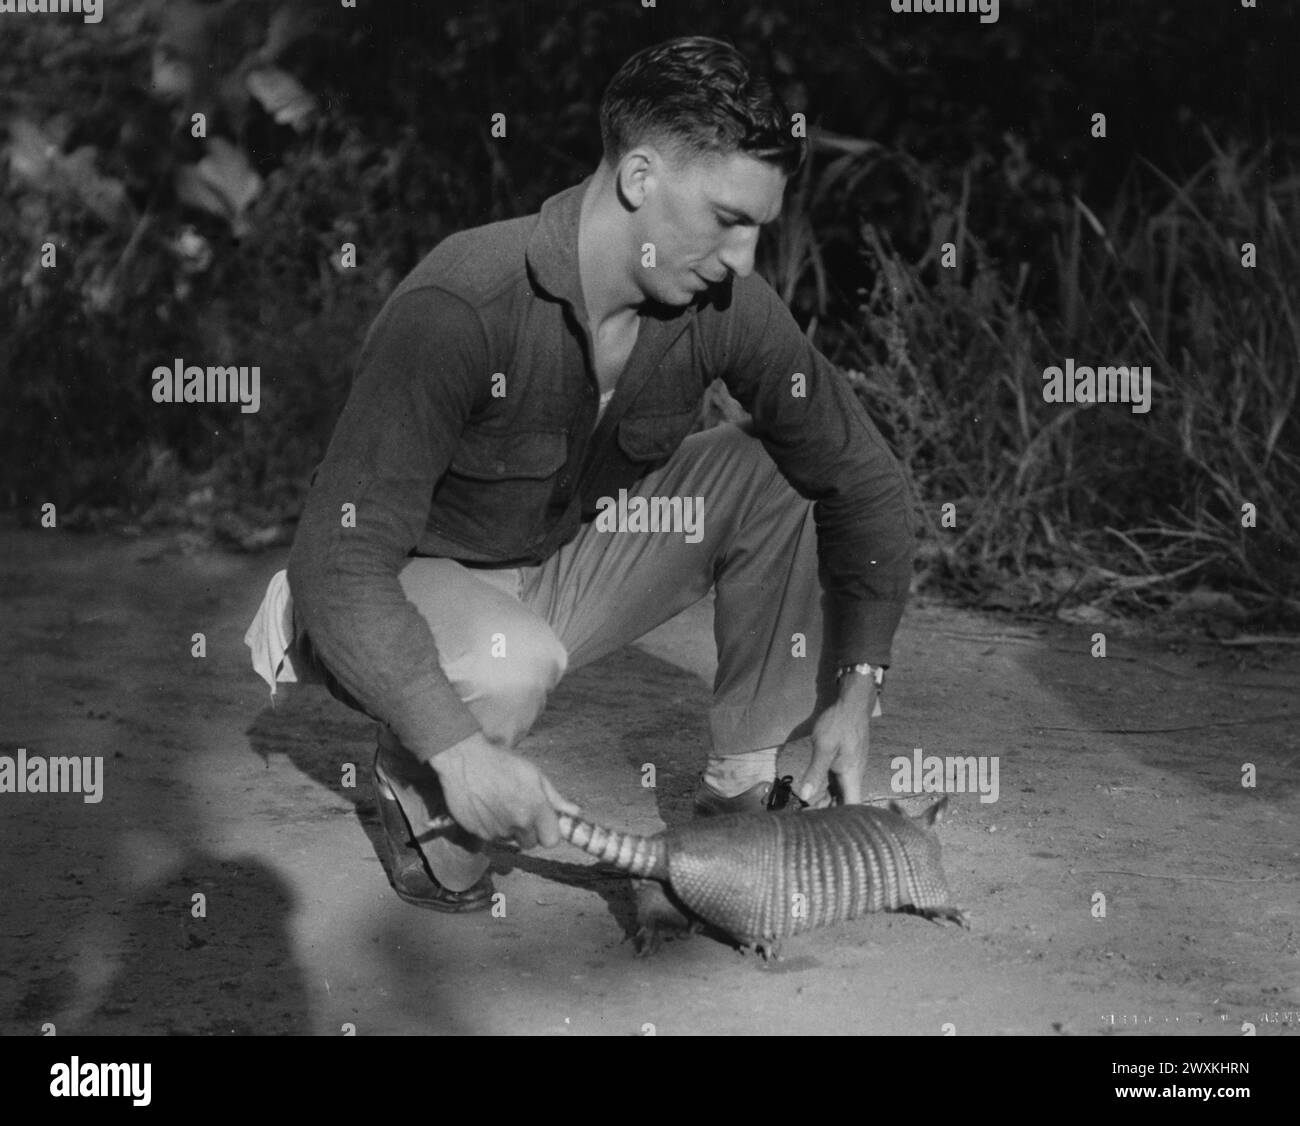 Dipartimento del Canale di Panama. Manovre del reparto. "Tropical Steel Armored Tank". Soldato sul campo con un armadillo, che era l'animale domestico del vestito. (Notare la pelle simile a un'armatura dell'armadillo) ca. 1934 Foto Stock